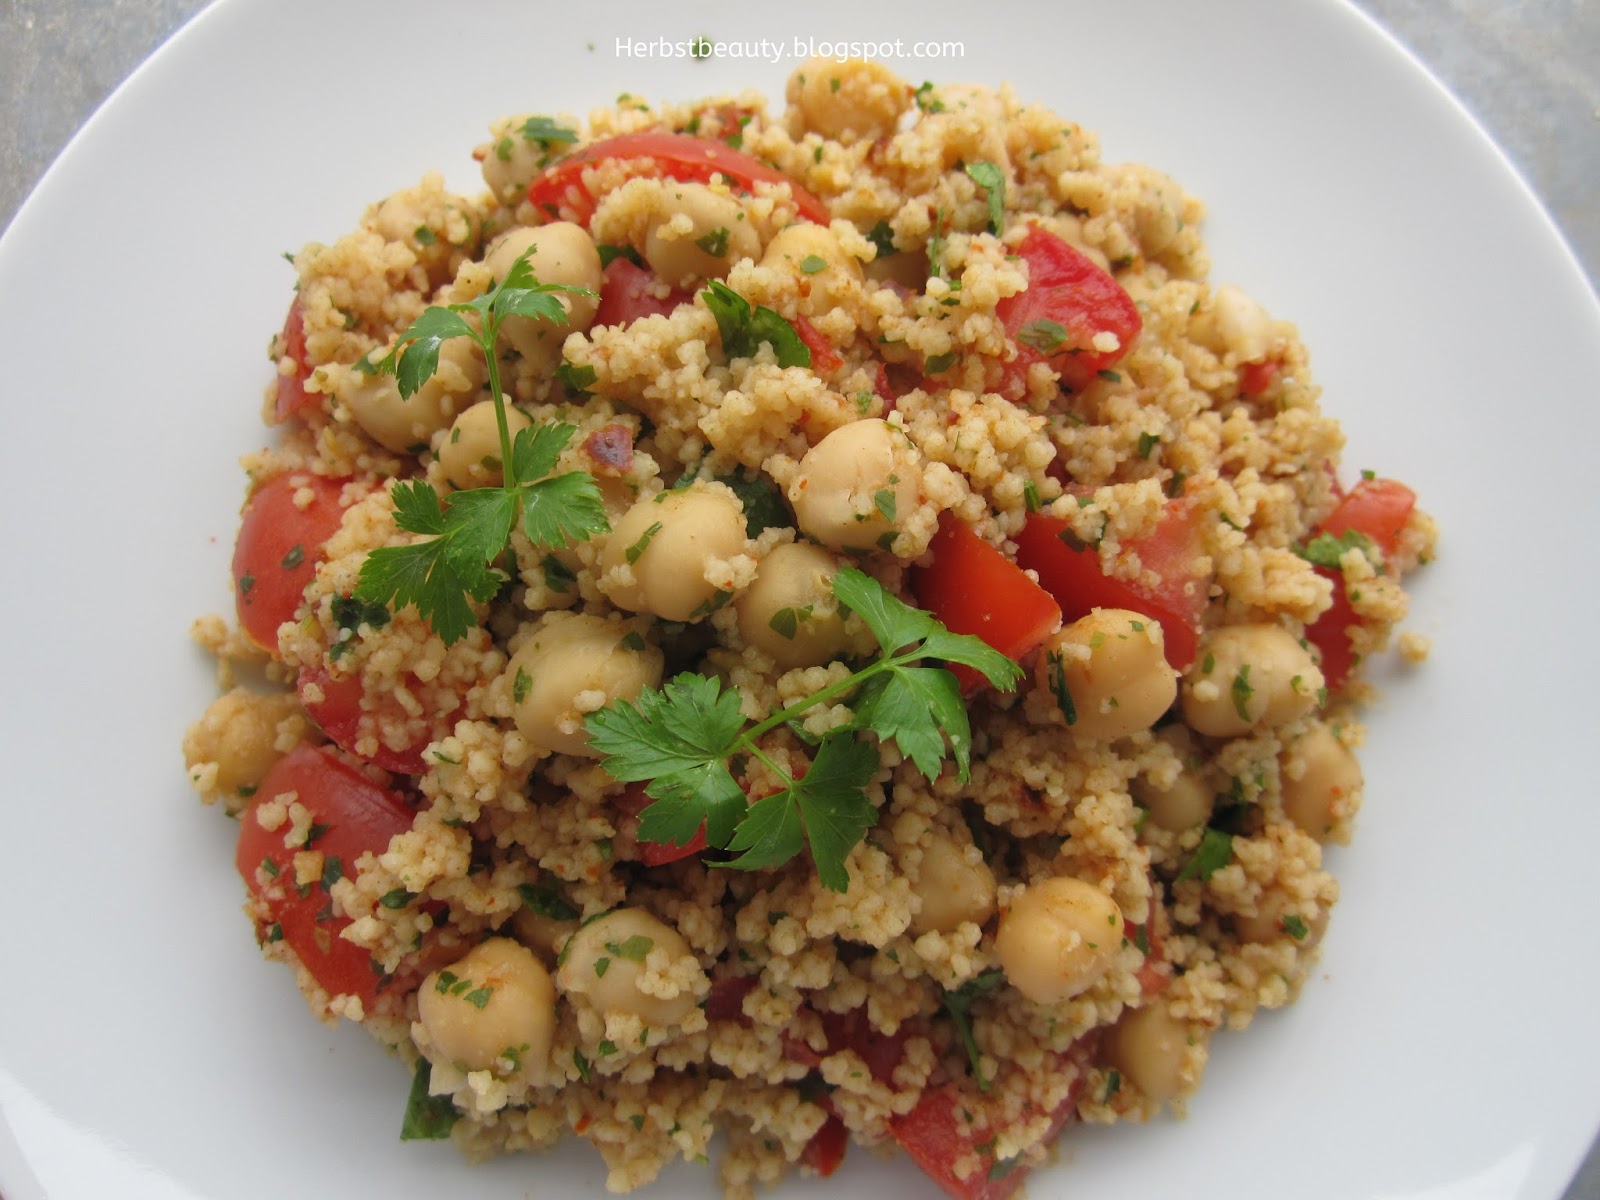 Herbstbeauty: Kreativküche: Couscous-Salat mit Kichererbsen